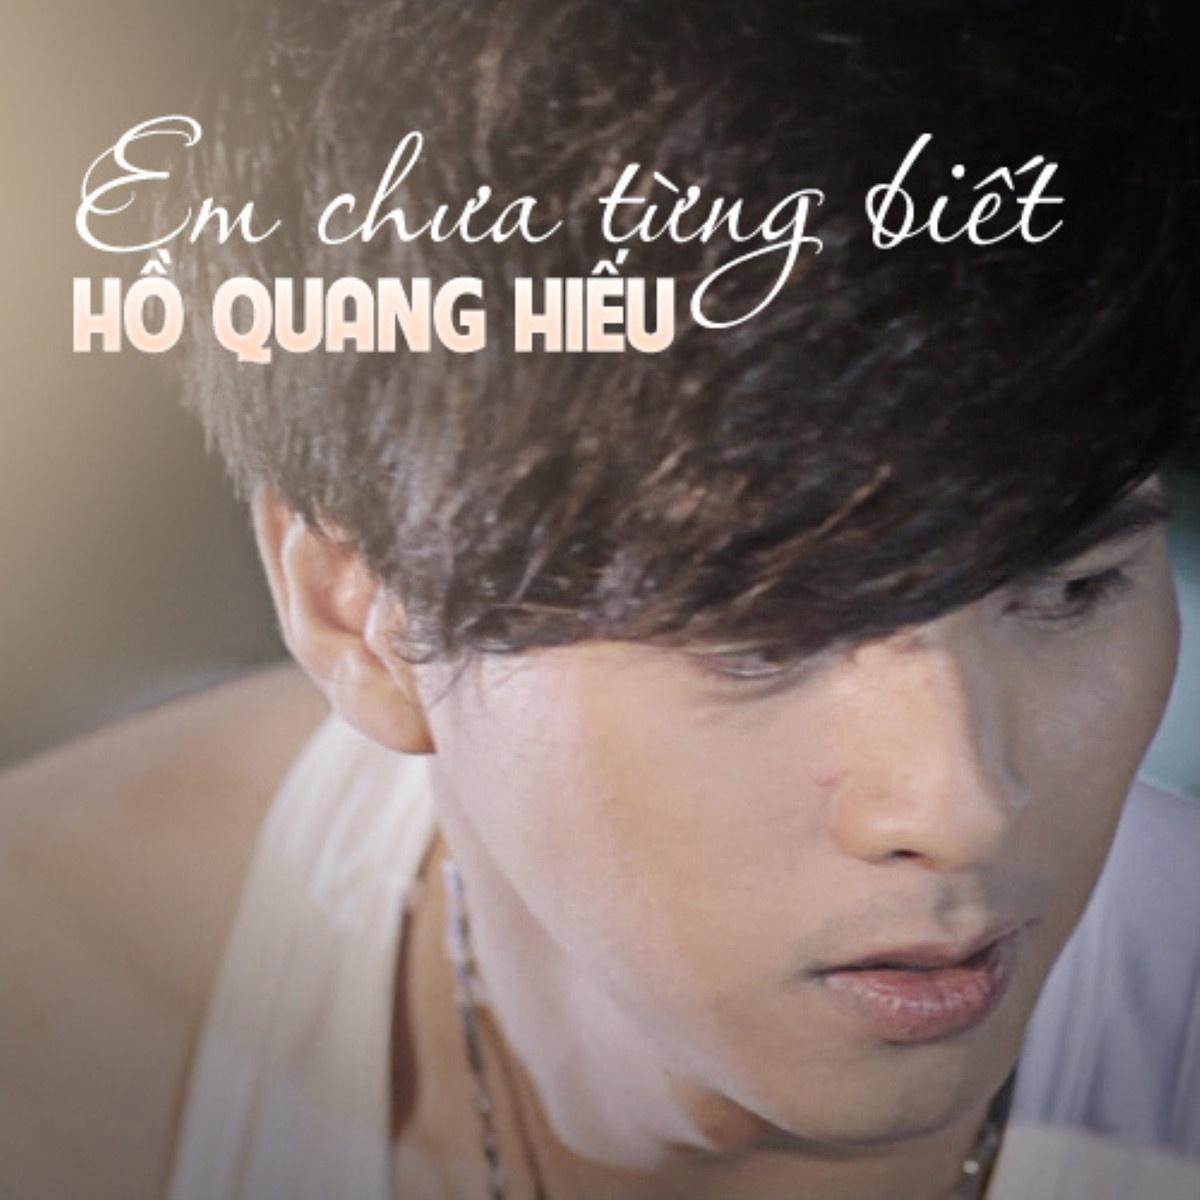 Ho Quang Hieu - Biet Phai Lam Sao